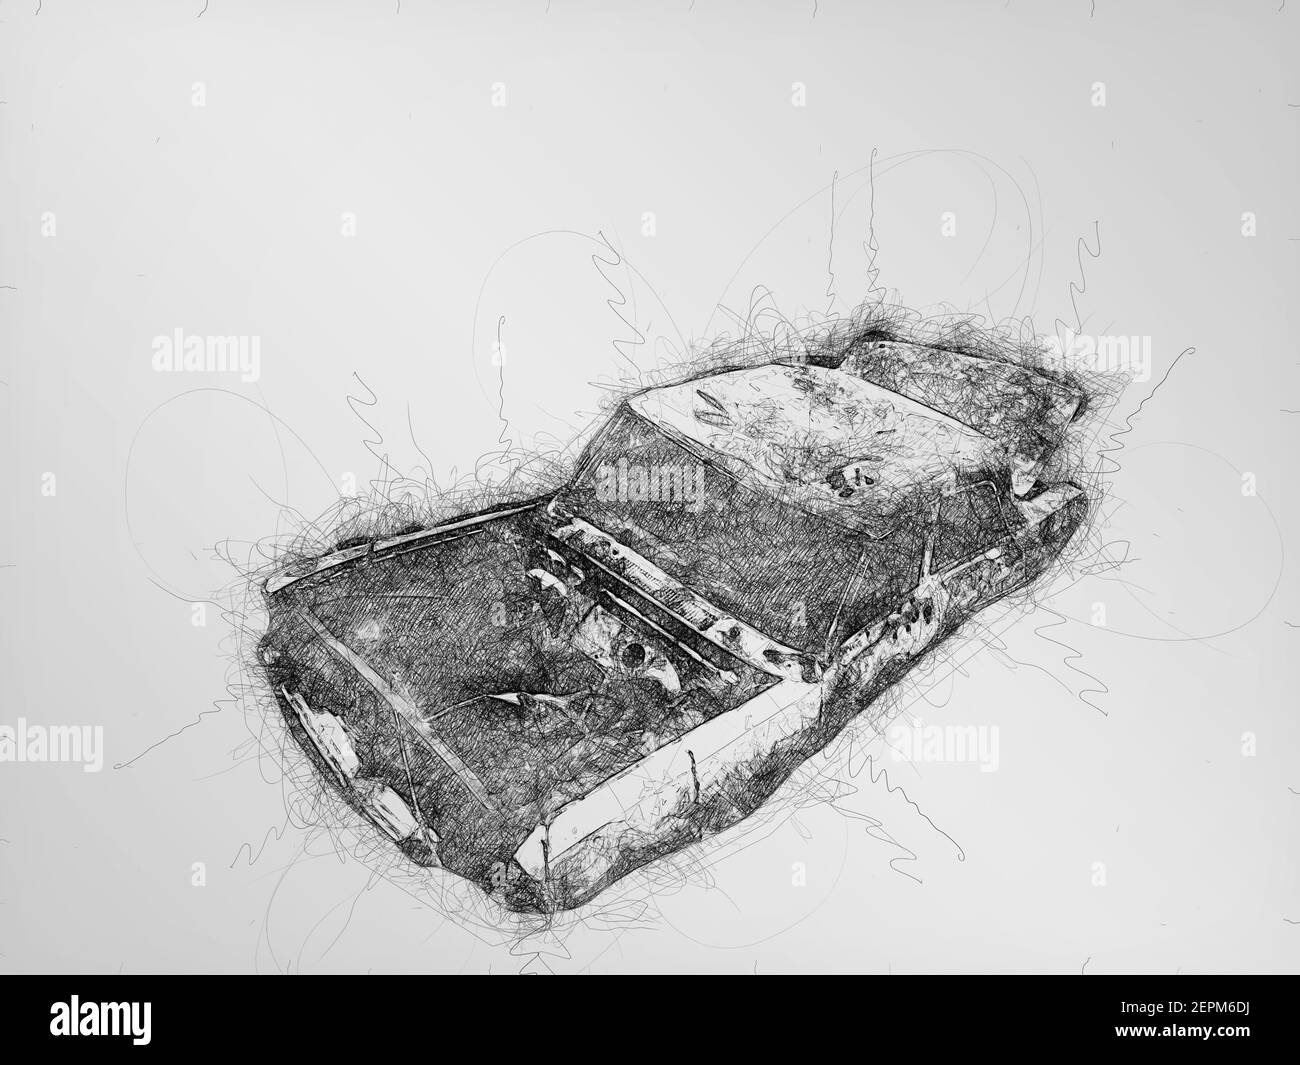 Dessin de gribouillage monochromatique numérique d'une vieille voiture abandonnée sur fond blanc. Banque D'Images